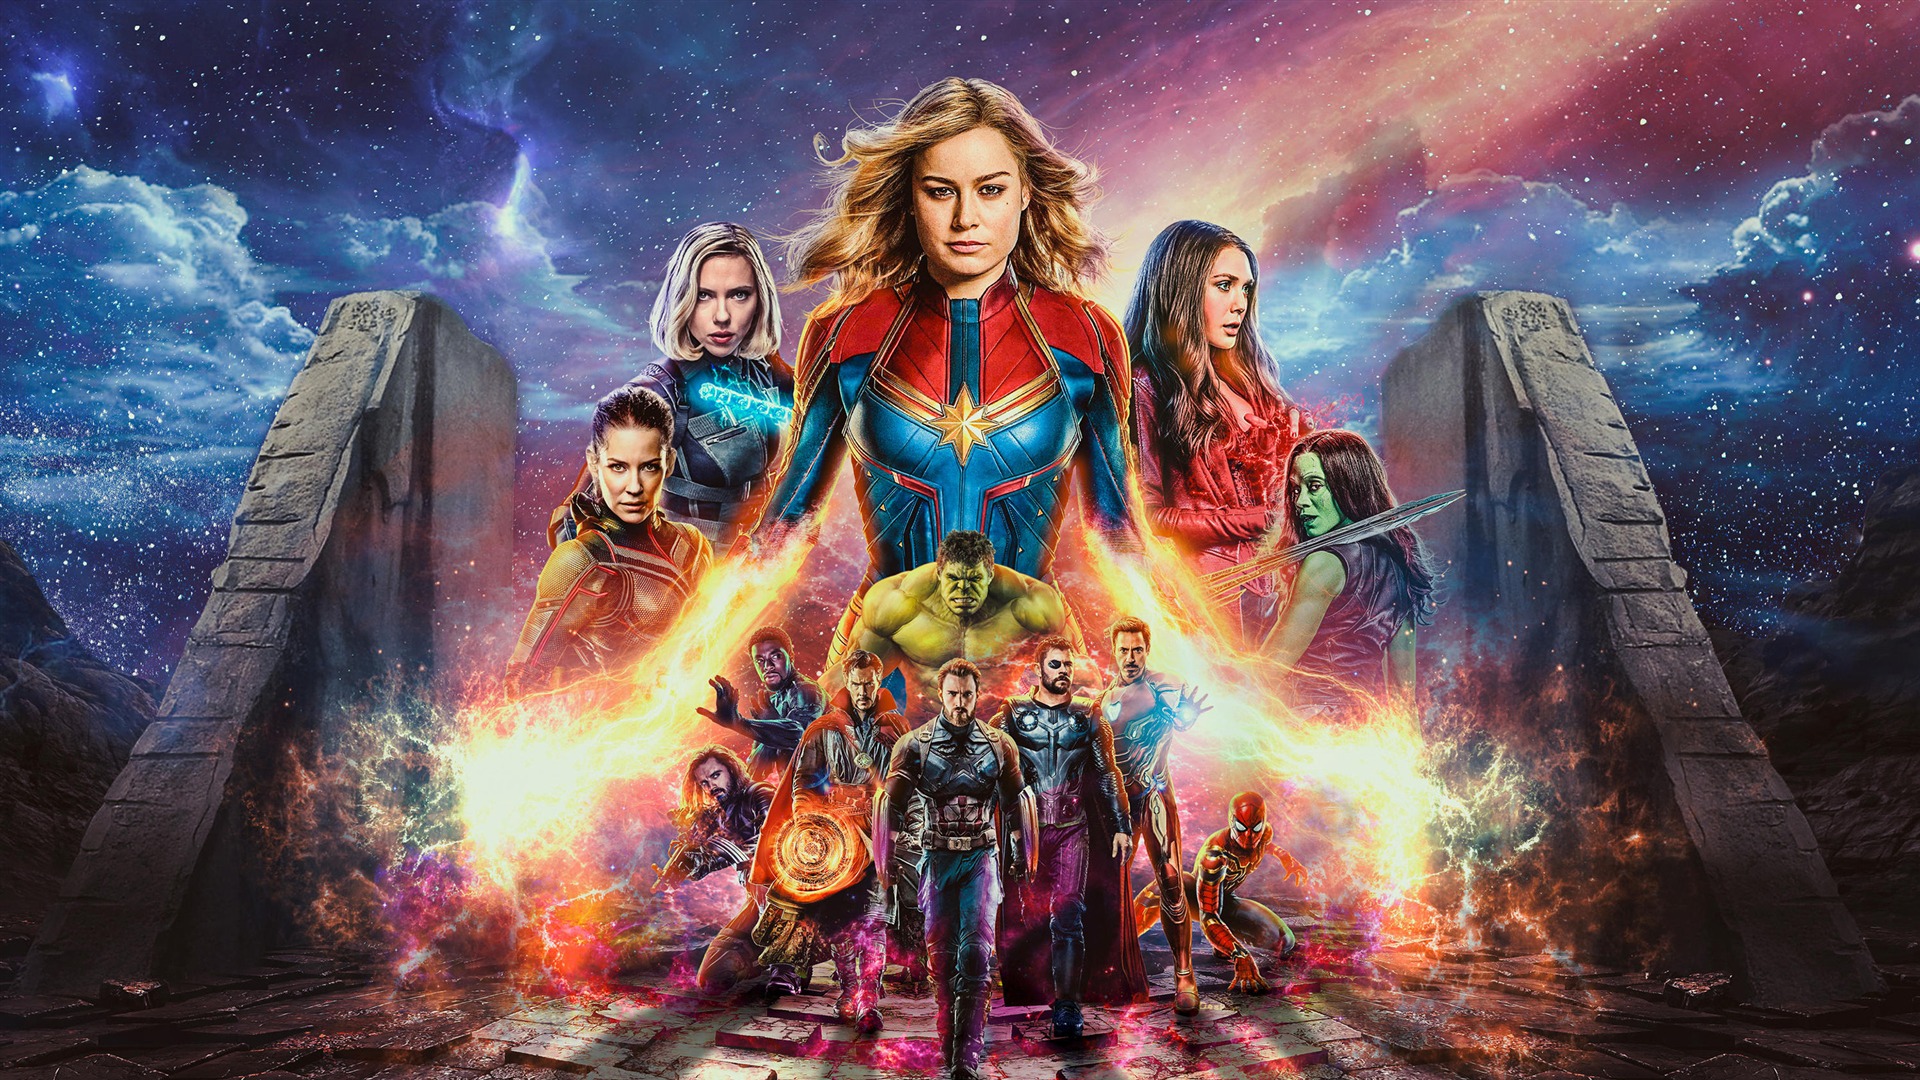 Captain Marvel Avengers Endgame Movie Wallpaper High Quality